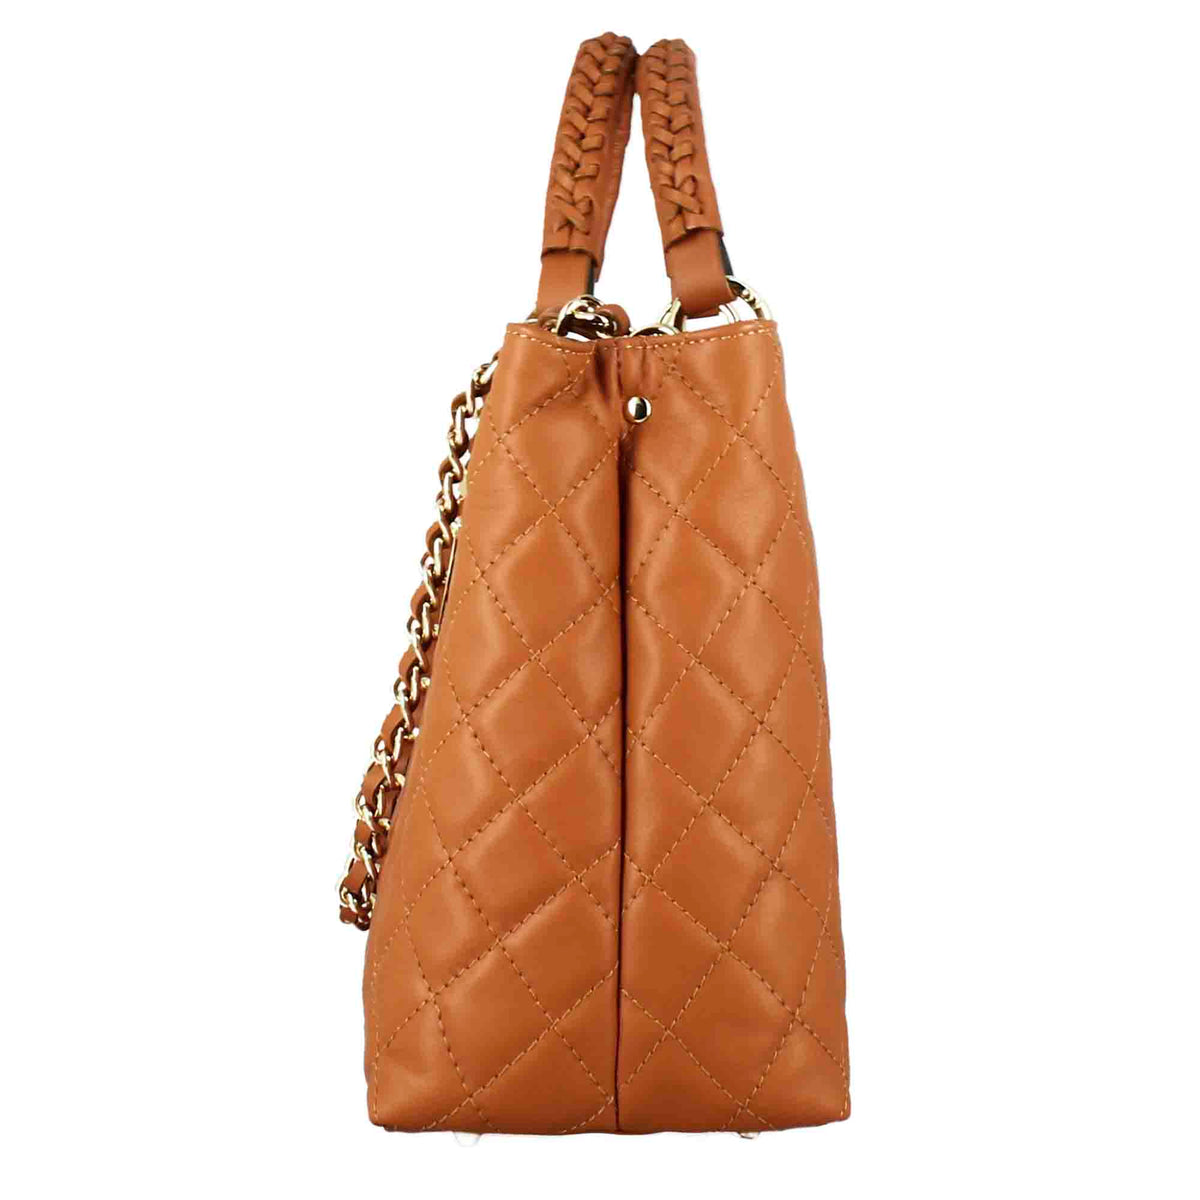   Vanity Shopper-Tasche mit Schulterriemen aus braunem, gestepptem Leder  